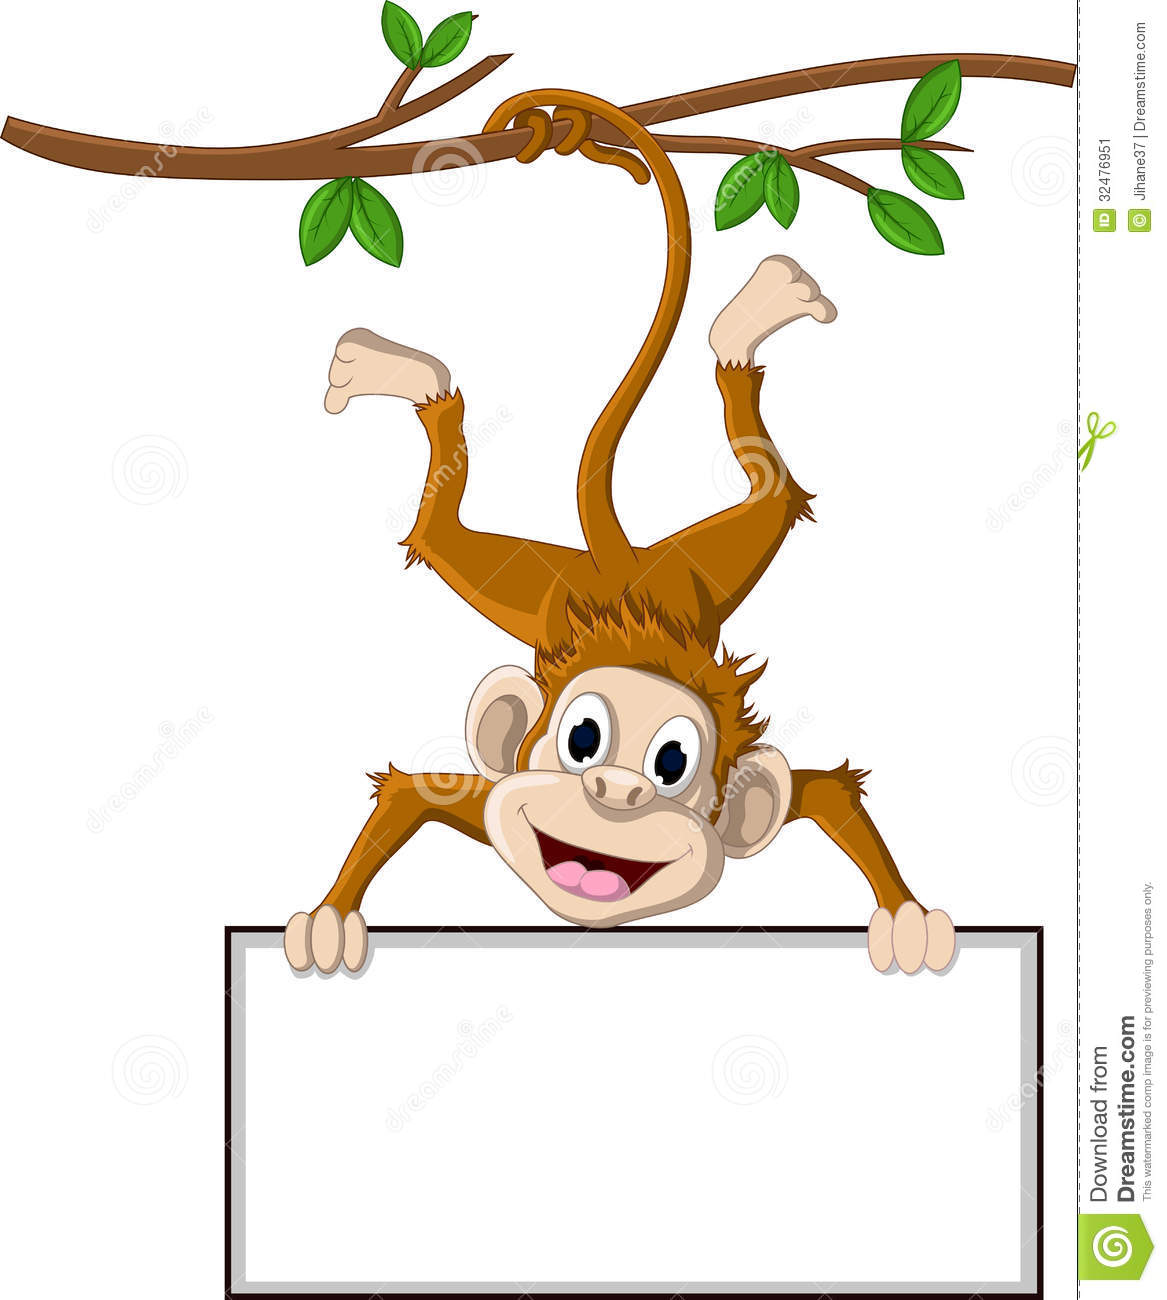 Monkey Cartoon Holding Blank Sign Stock Image   Image  32476951